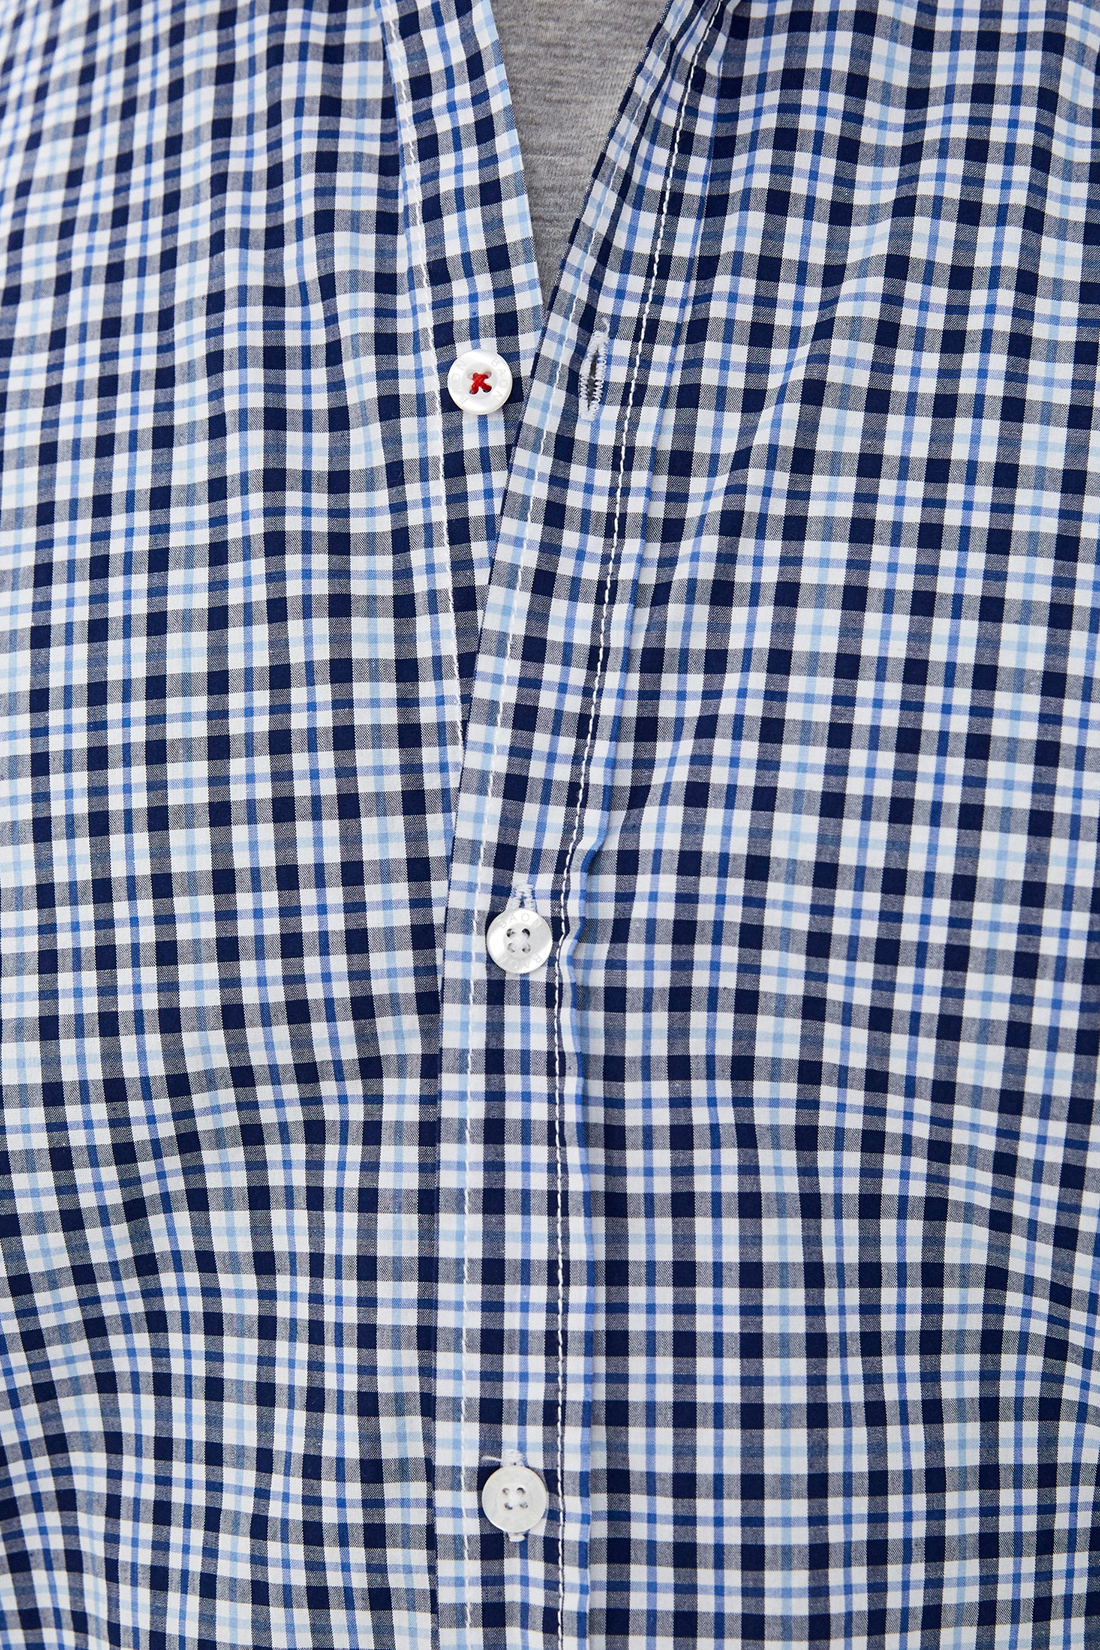 Рубашка в клетку с коротким рукавом (арт. baon B680010), размер L, цвет синий Рубашка в клетку с коротким рукавом (арт. baon B680010) - фото 3